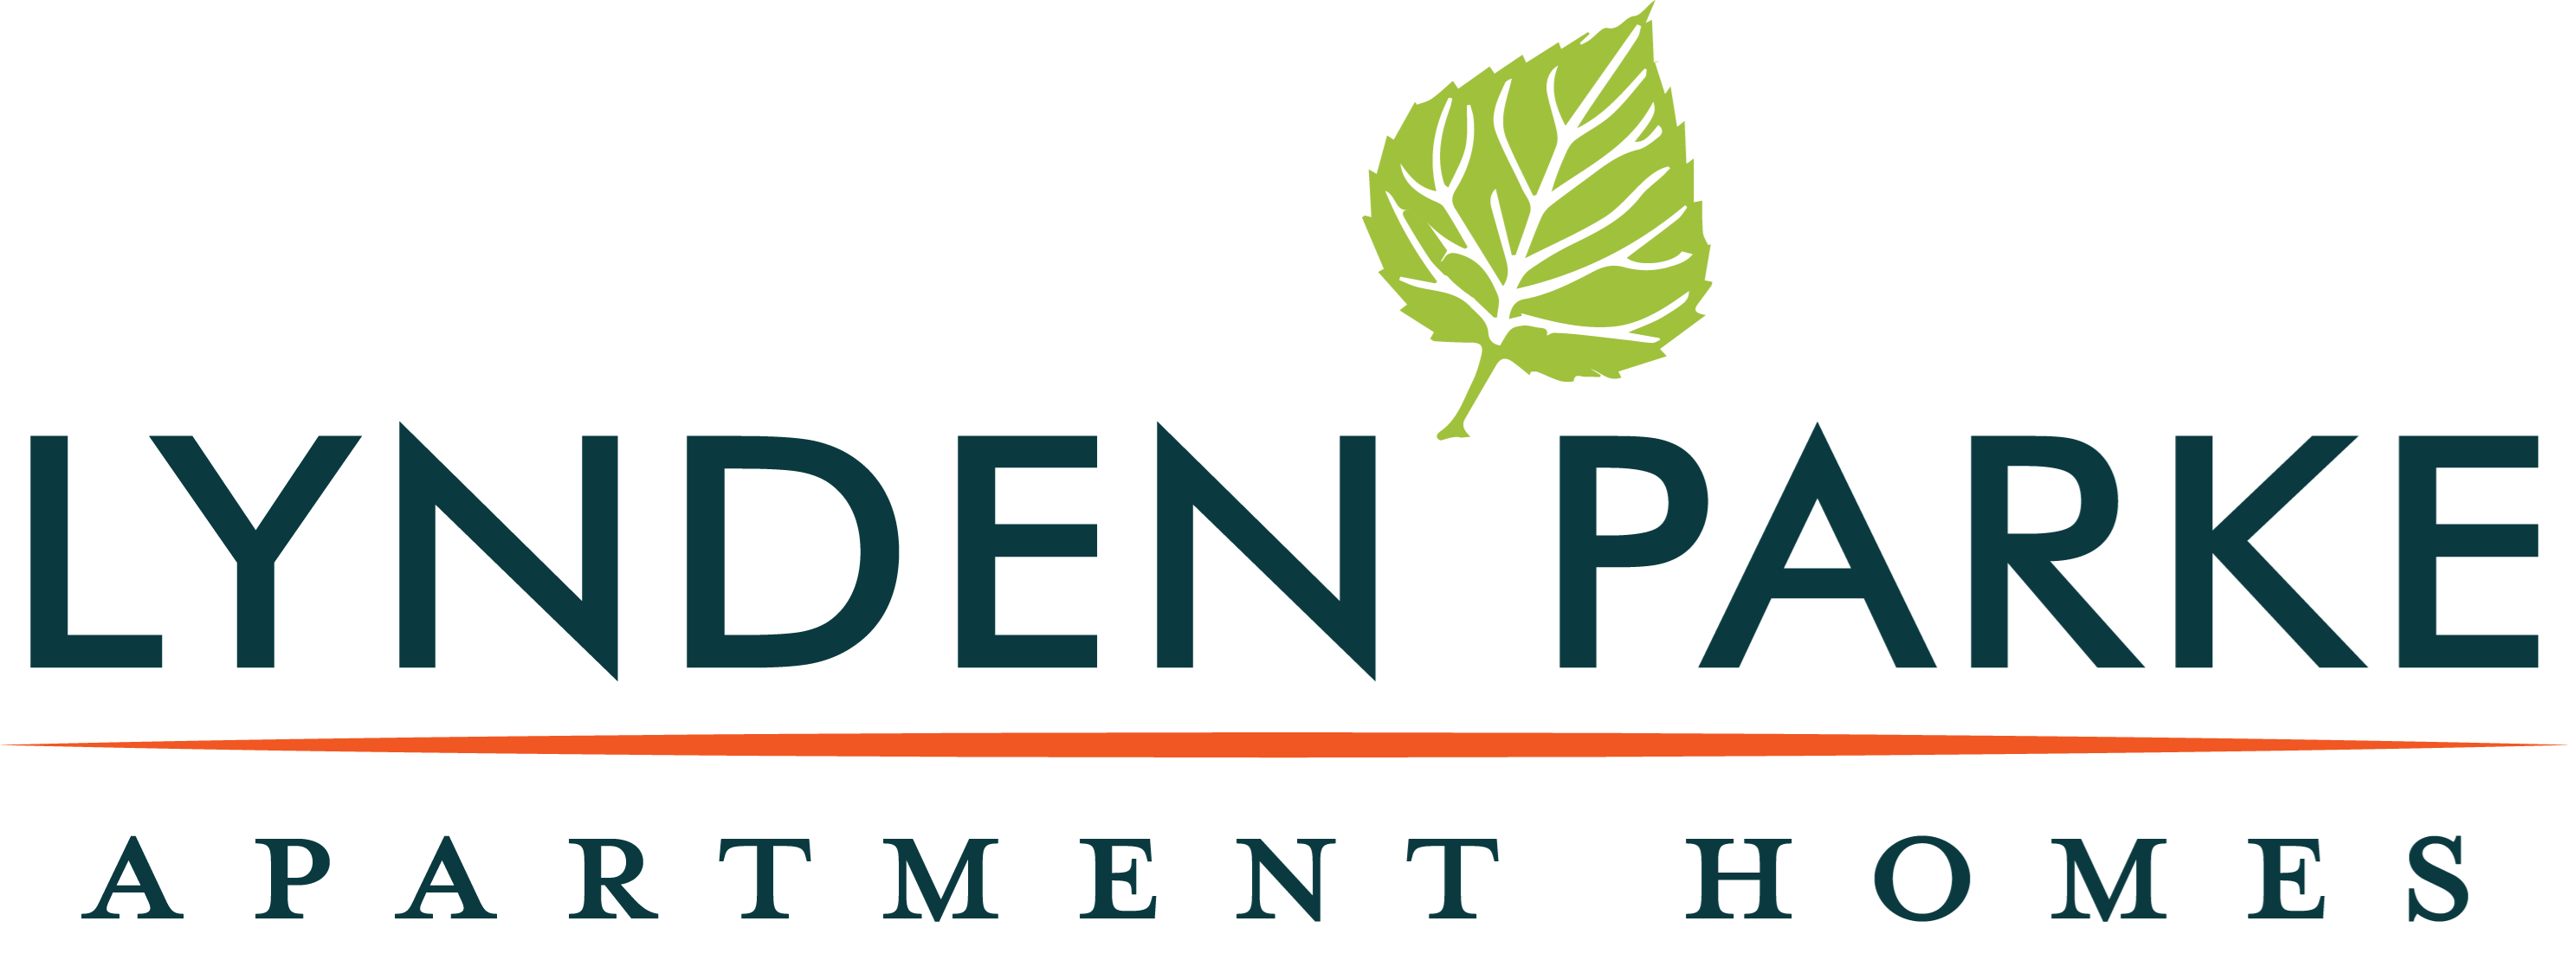 Lynden Logo - Apartments in Ypsilanti, MI | Lynden Parke Apartments | Concord ...